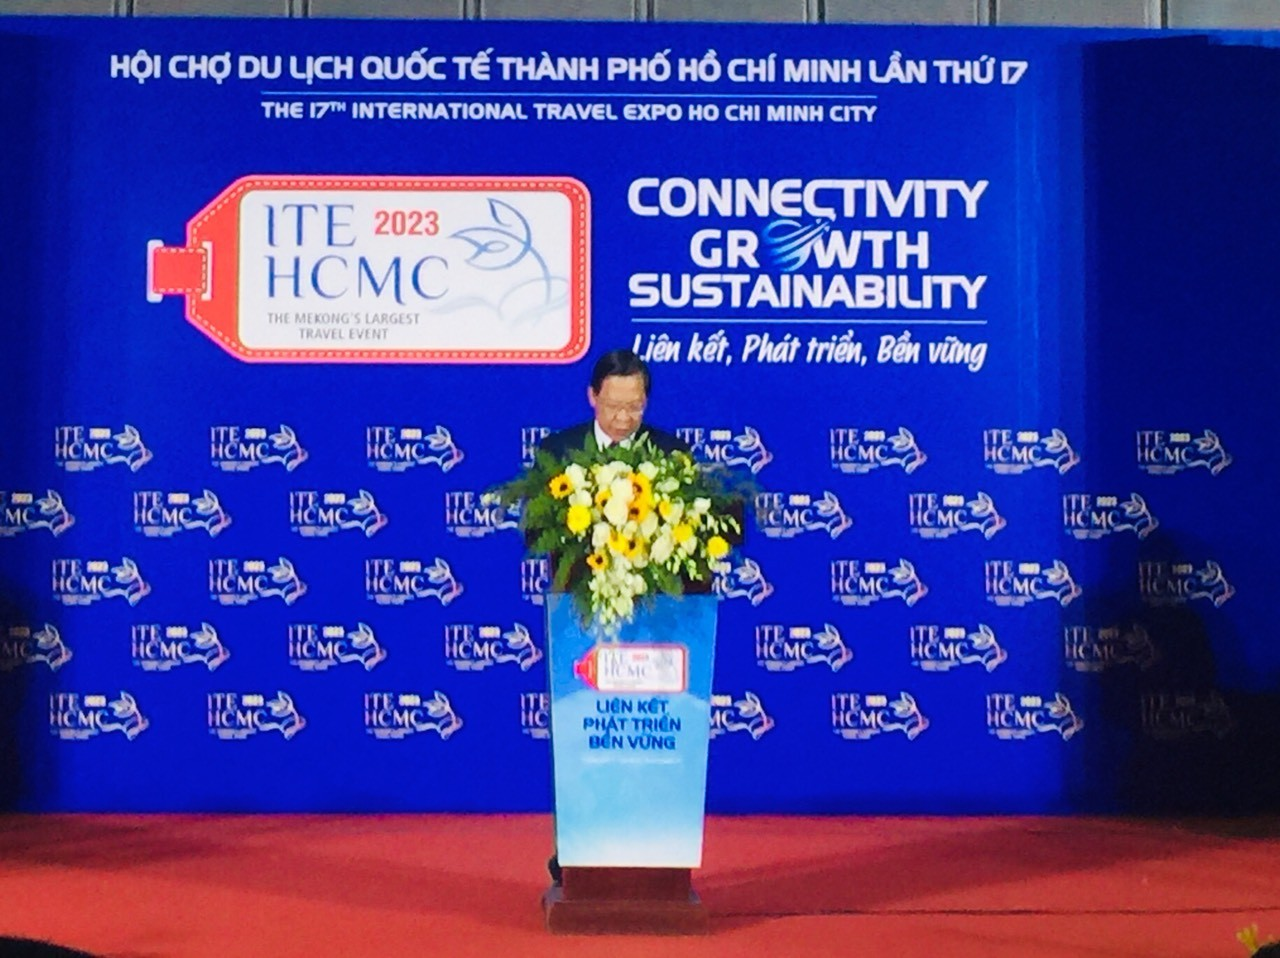 Hội chợ Du lịch Quốc tế Thành phố Hồ Chí Minh 2023: Liên kết, phát triển, bền vững ảnh 1